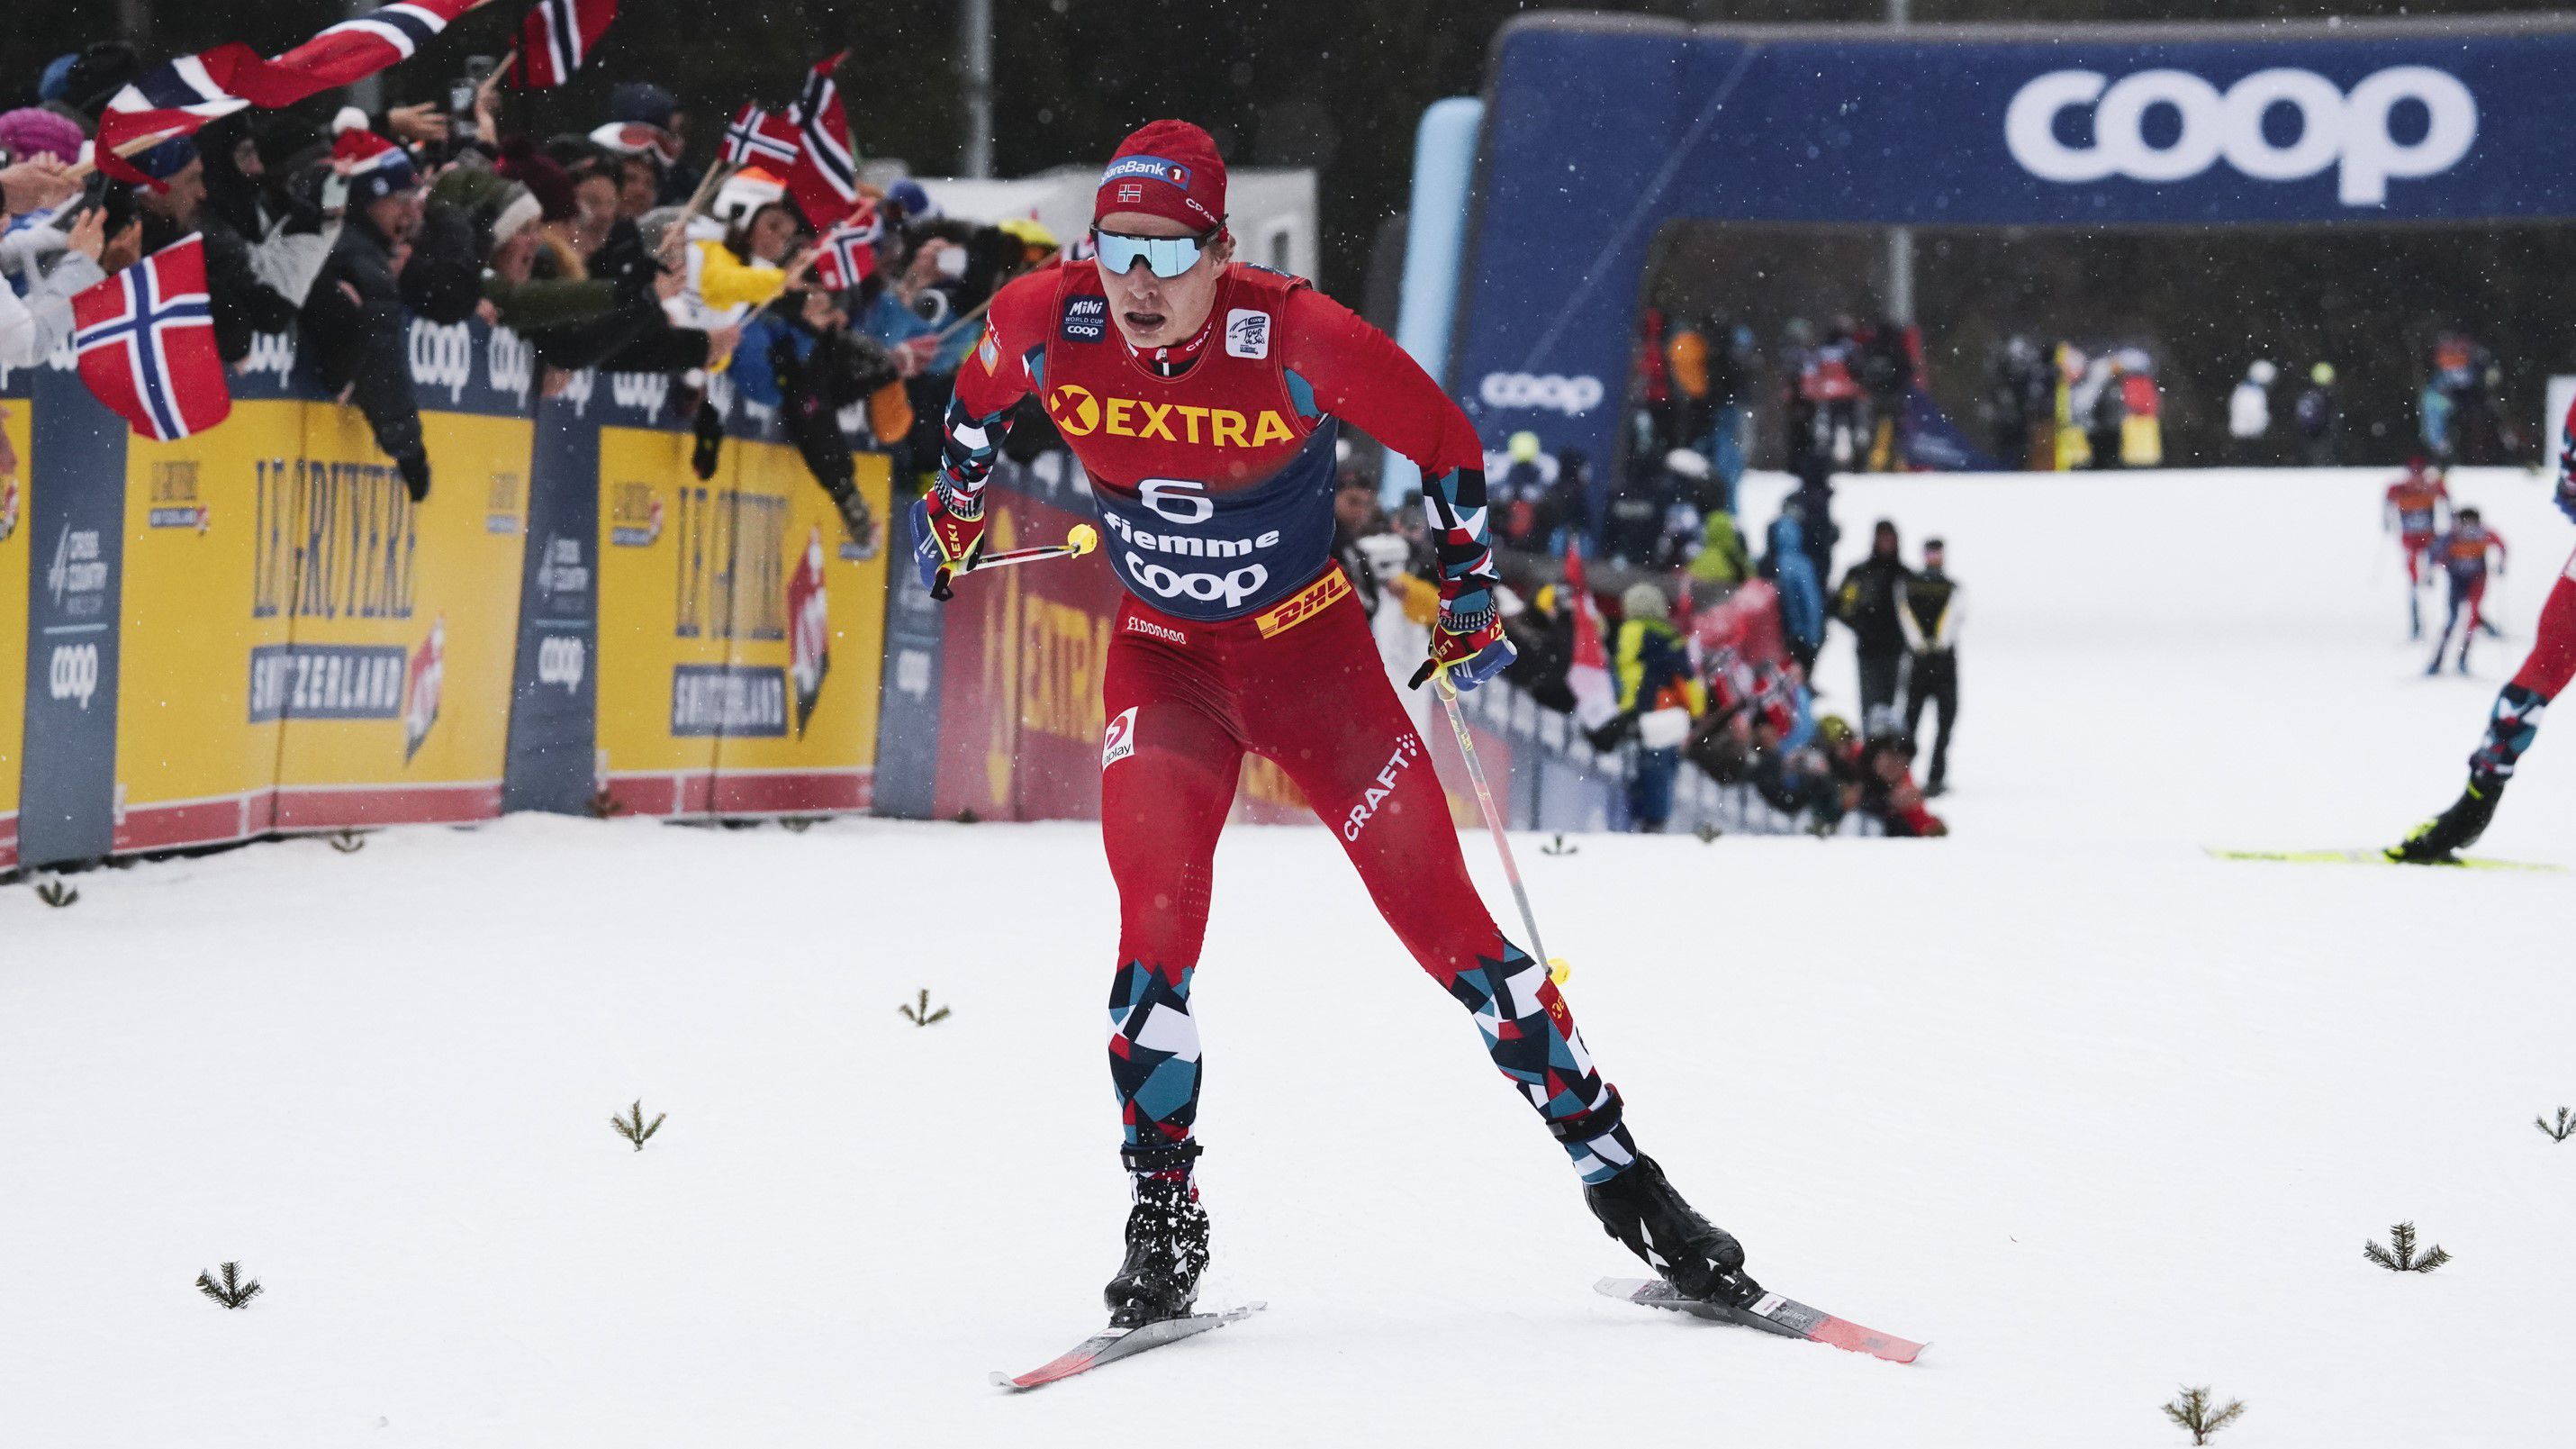 Teljes norvég siker a férfi sífutóknál a világbajnokságon